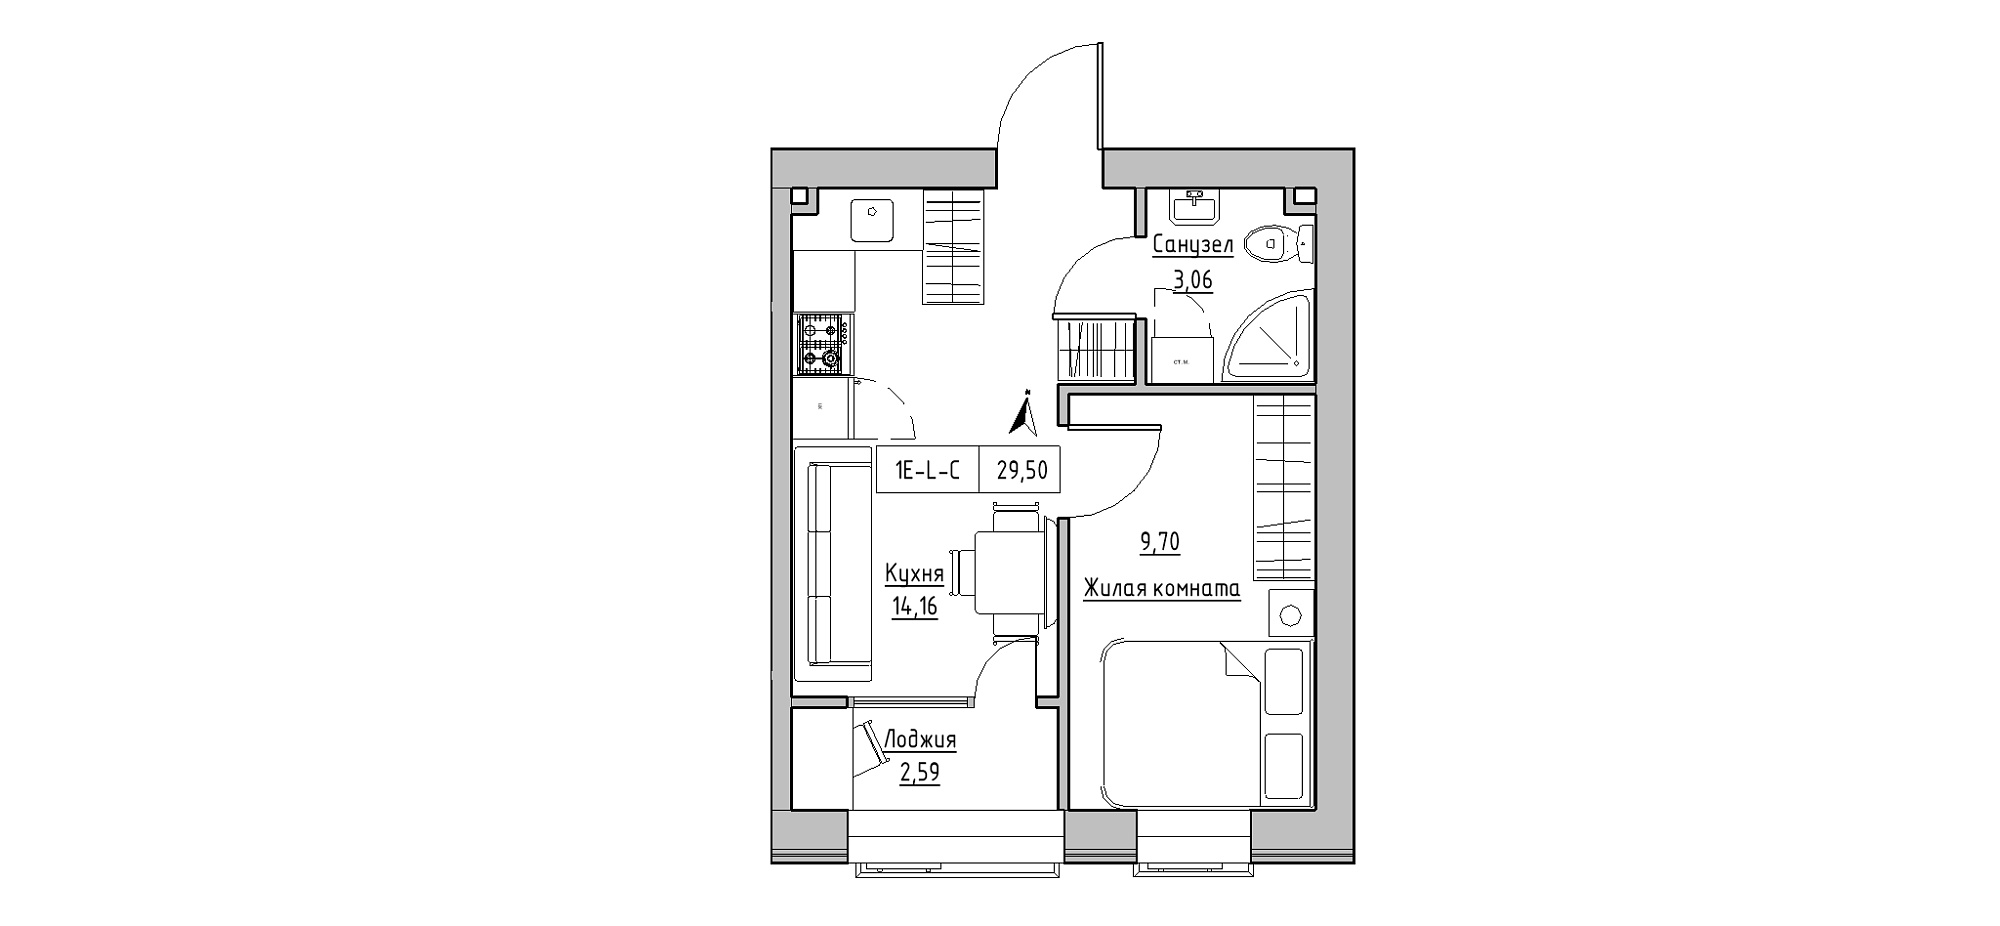 Планировка 1-к квартира площей 29.5м2, KS-020-02/0006.